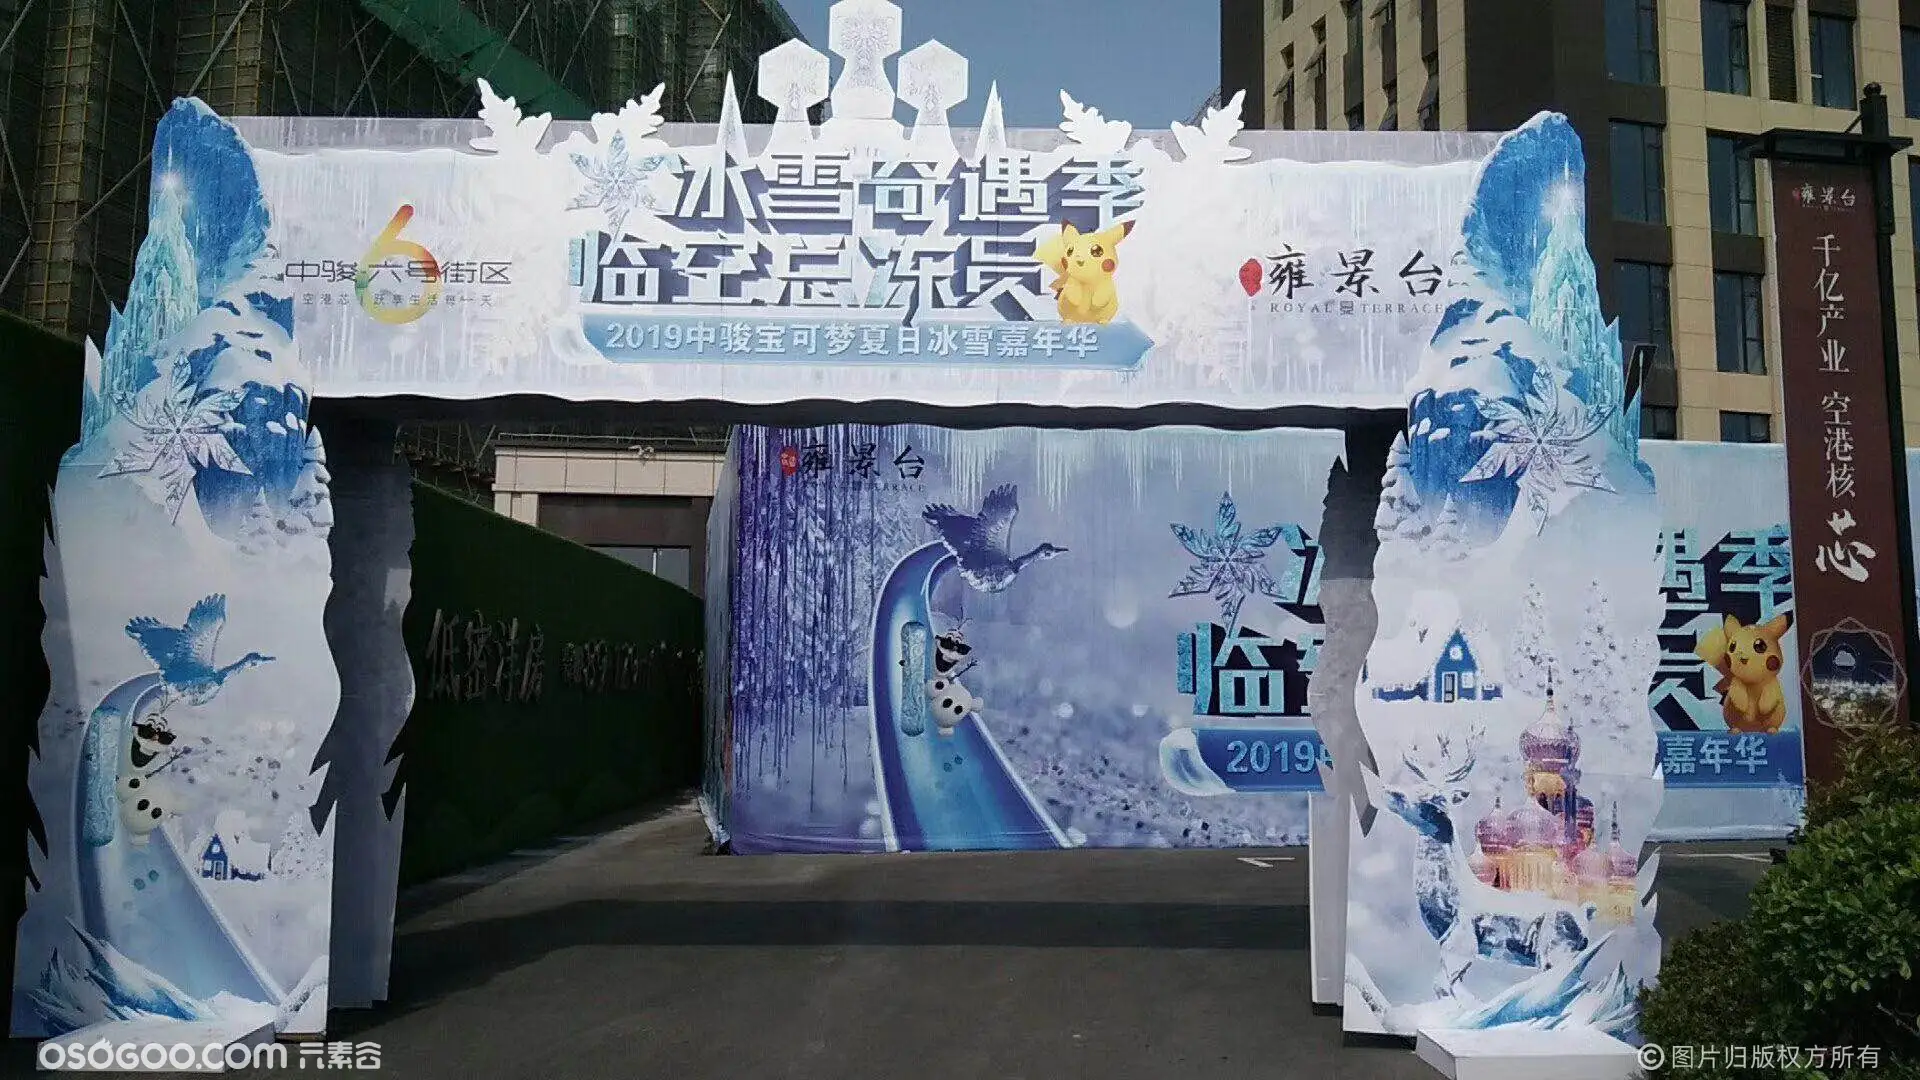 鹿邑县专业冰雕租赁公司 冰雪世界嘉年华 迪士尼冰雕主题出租